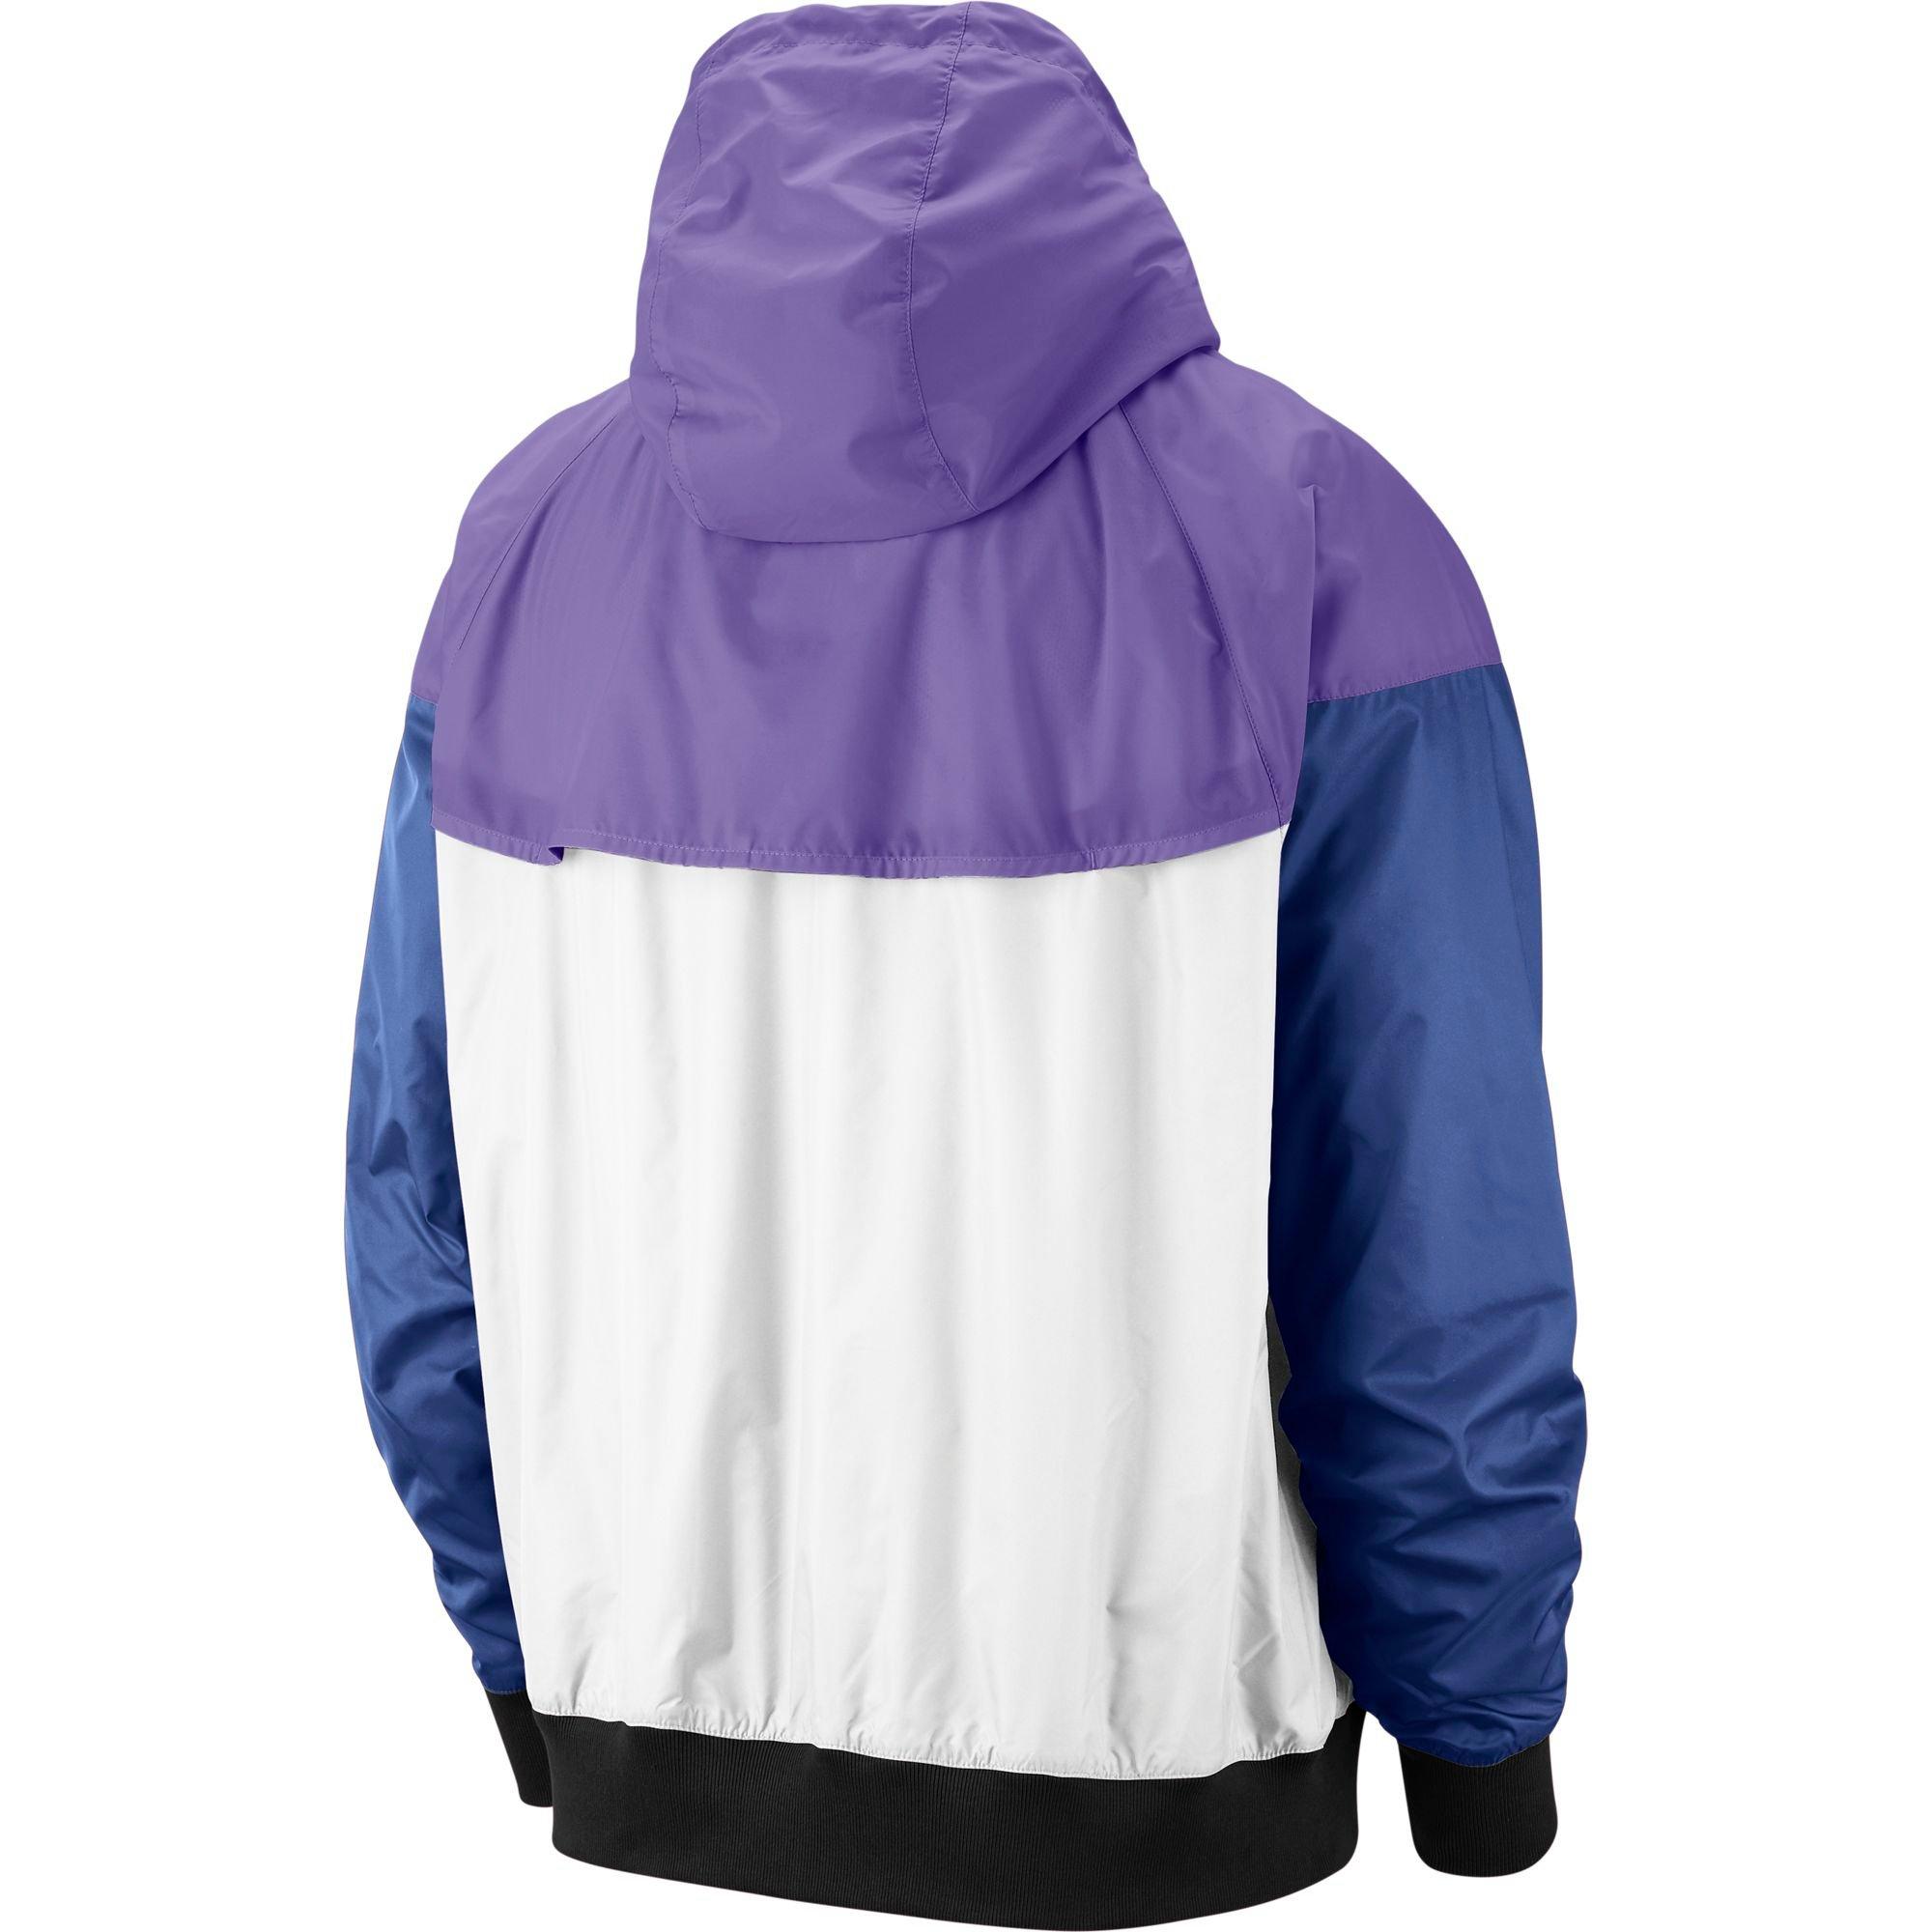 purple and black nike jacket